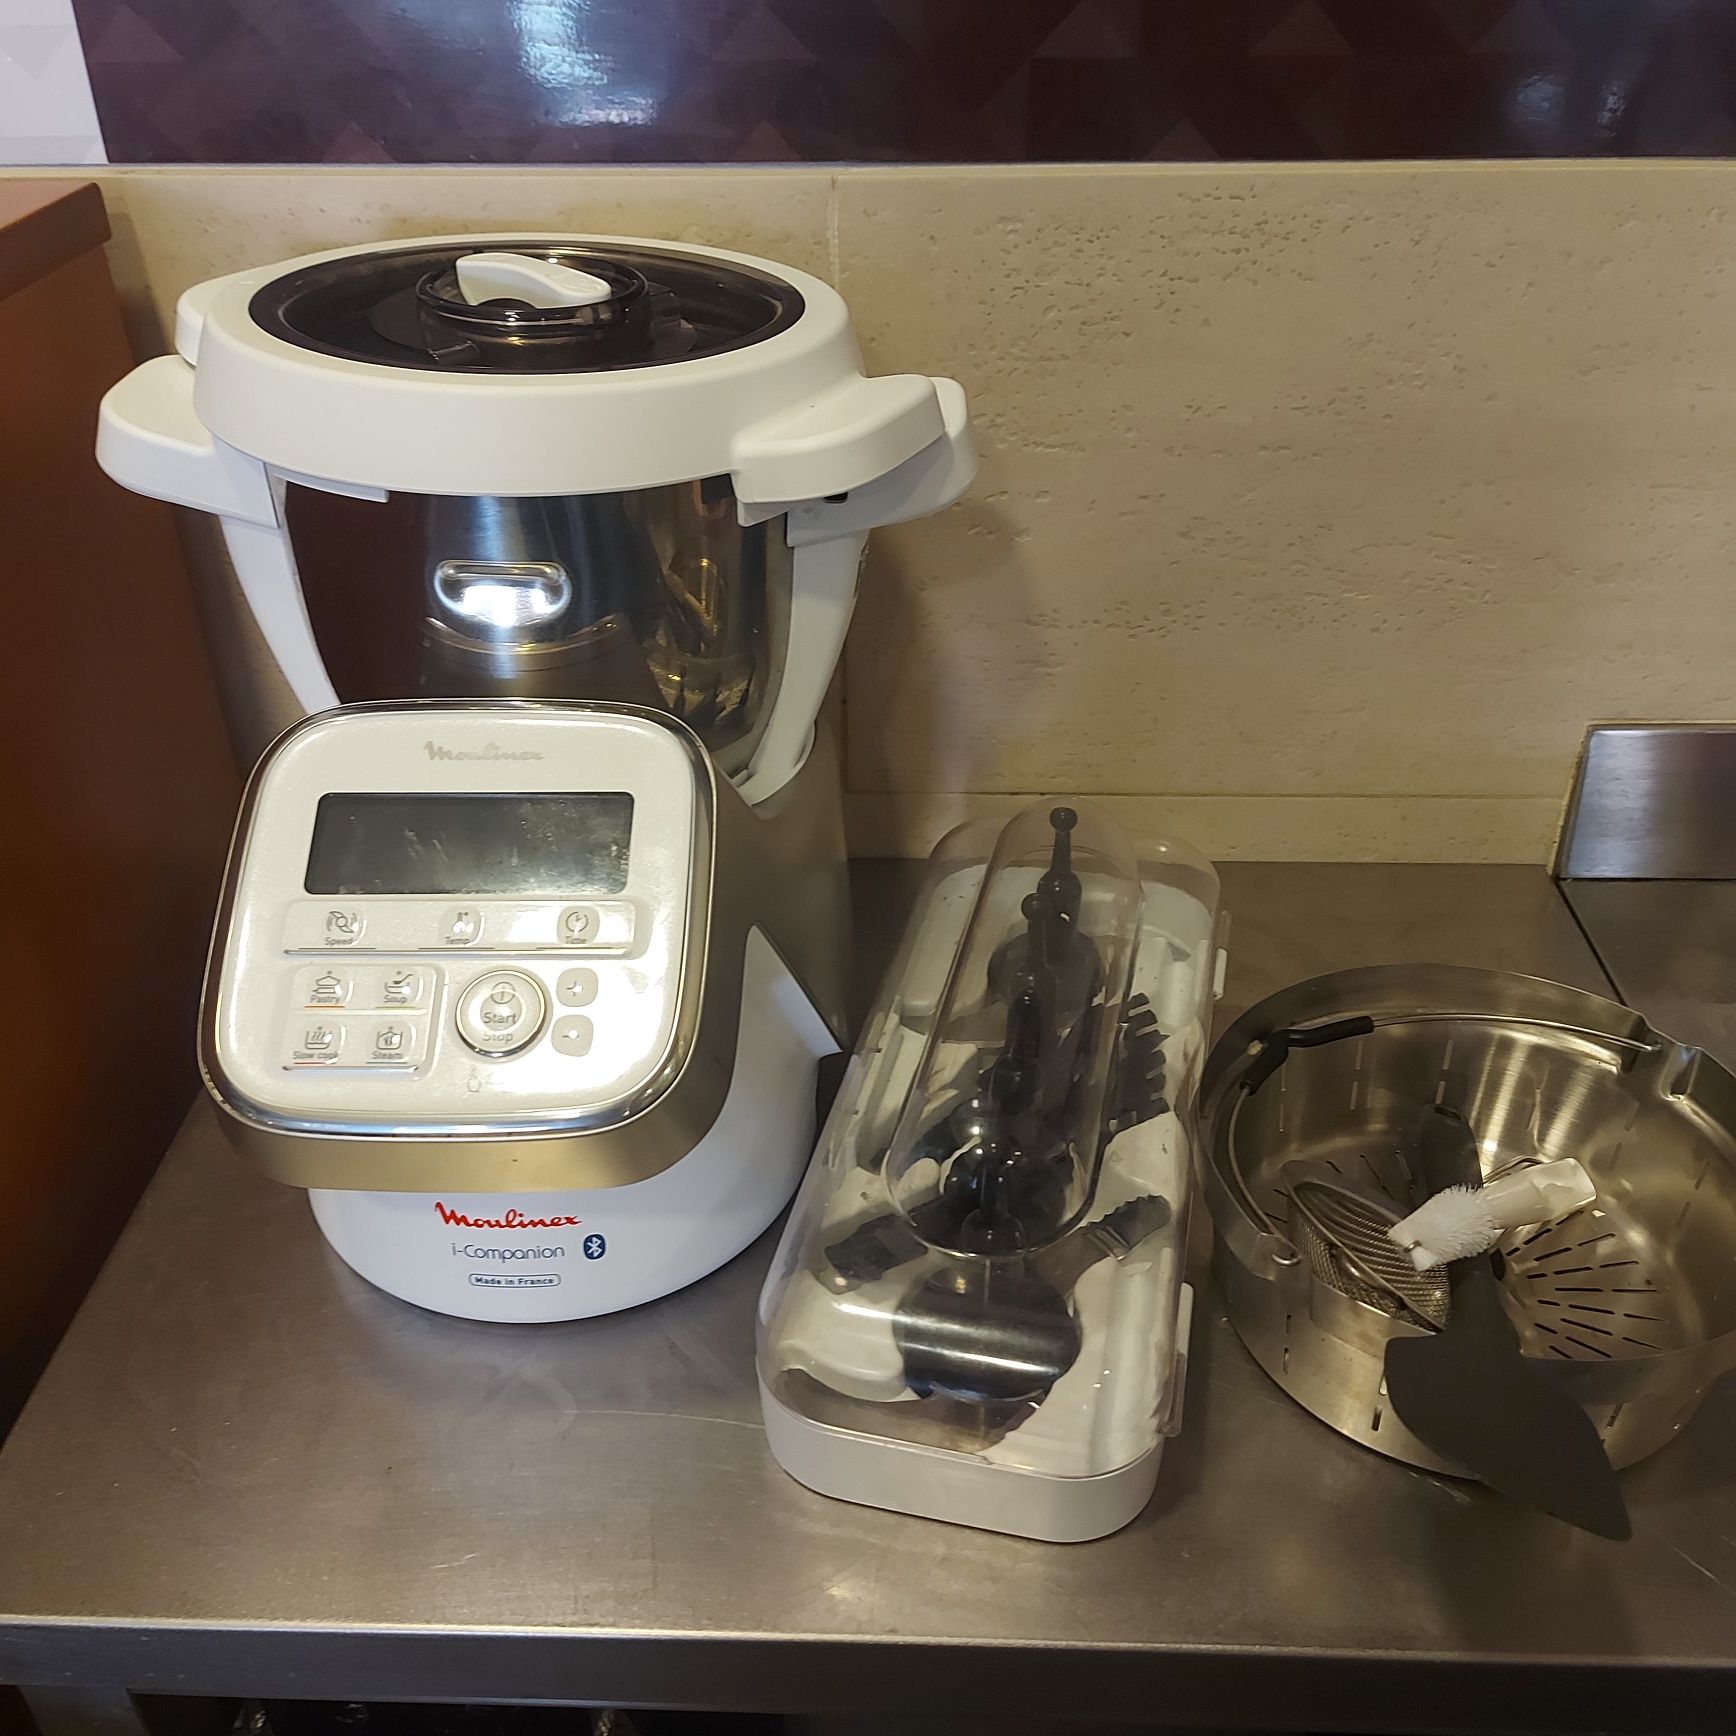 Robot de cozinha Moulinex i- Companion c/panela de vapor pouco uso